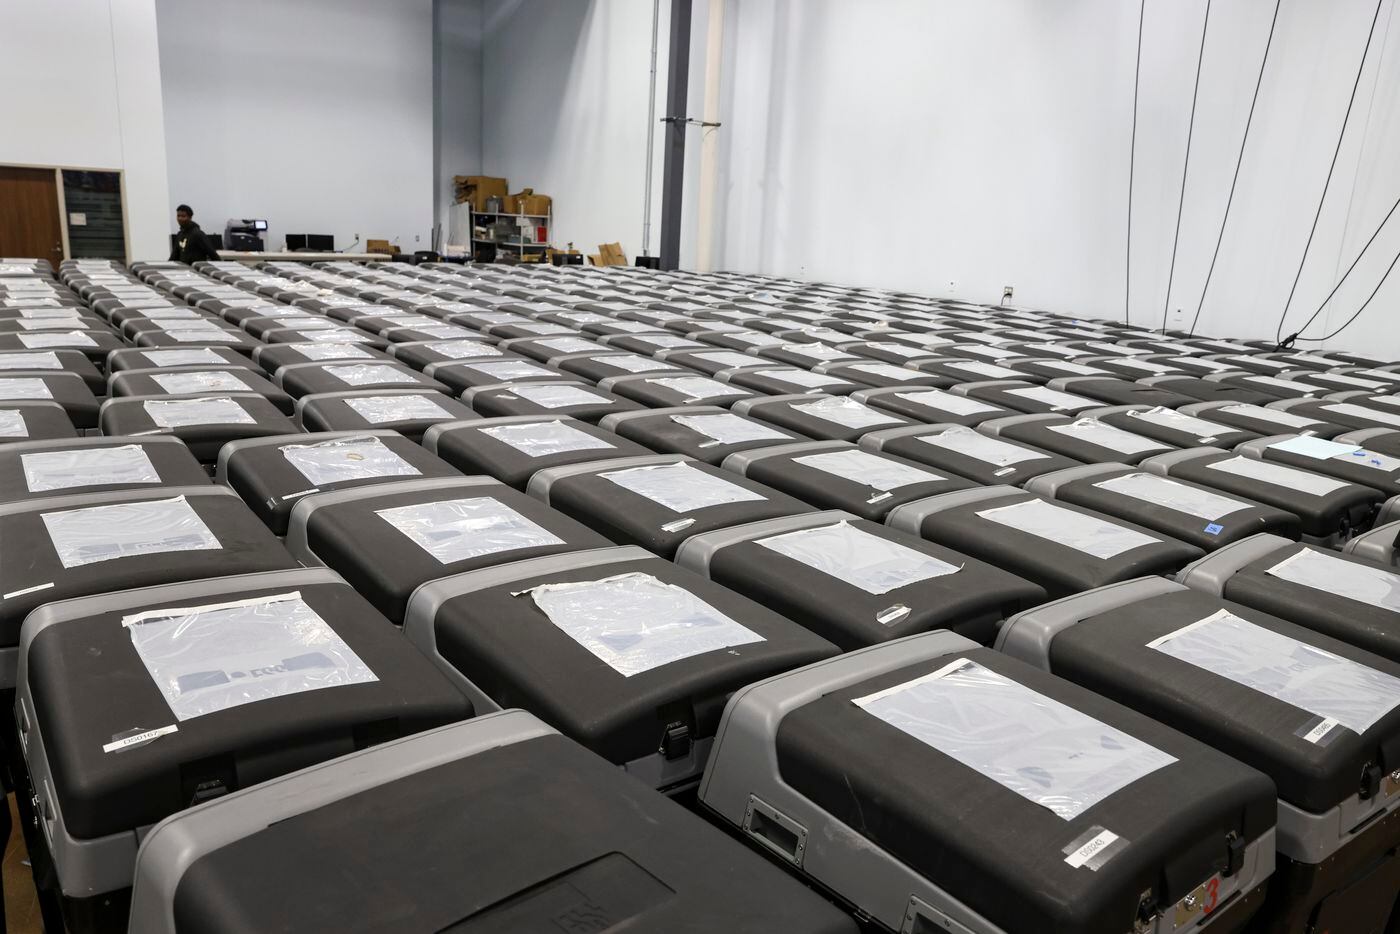 Rows of vote tabulators, Thursday, Oct. 6, 2022 at Dallas County Election Center in Dallas.